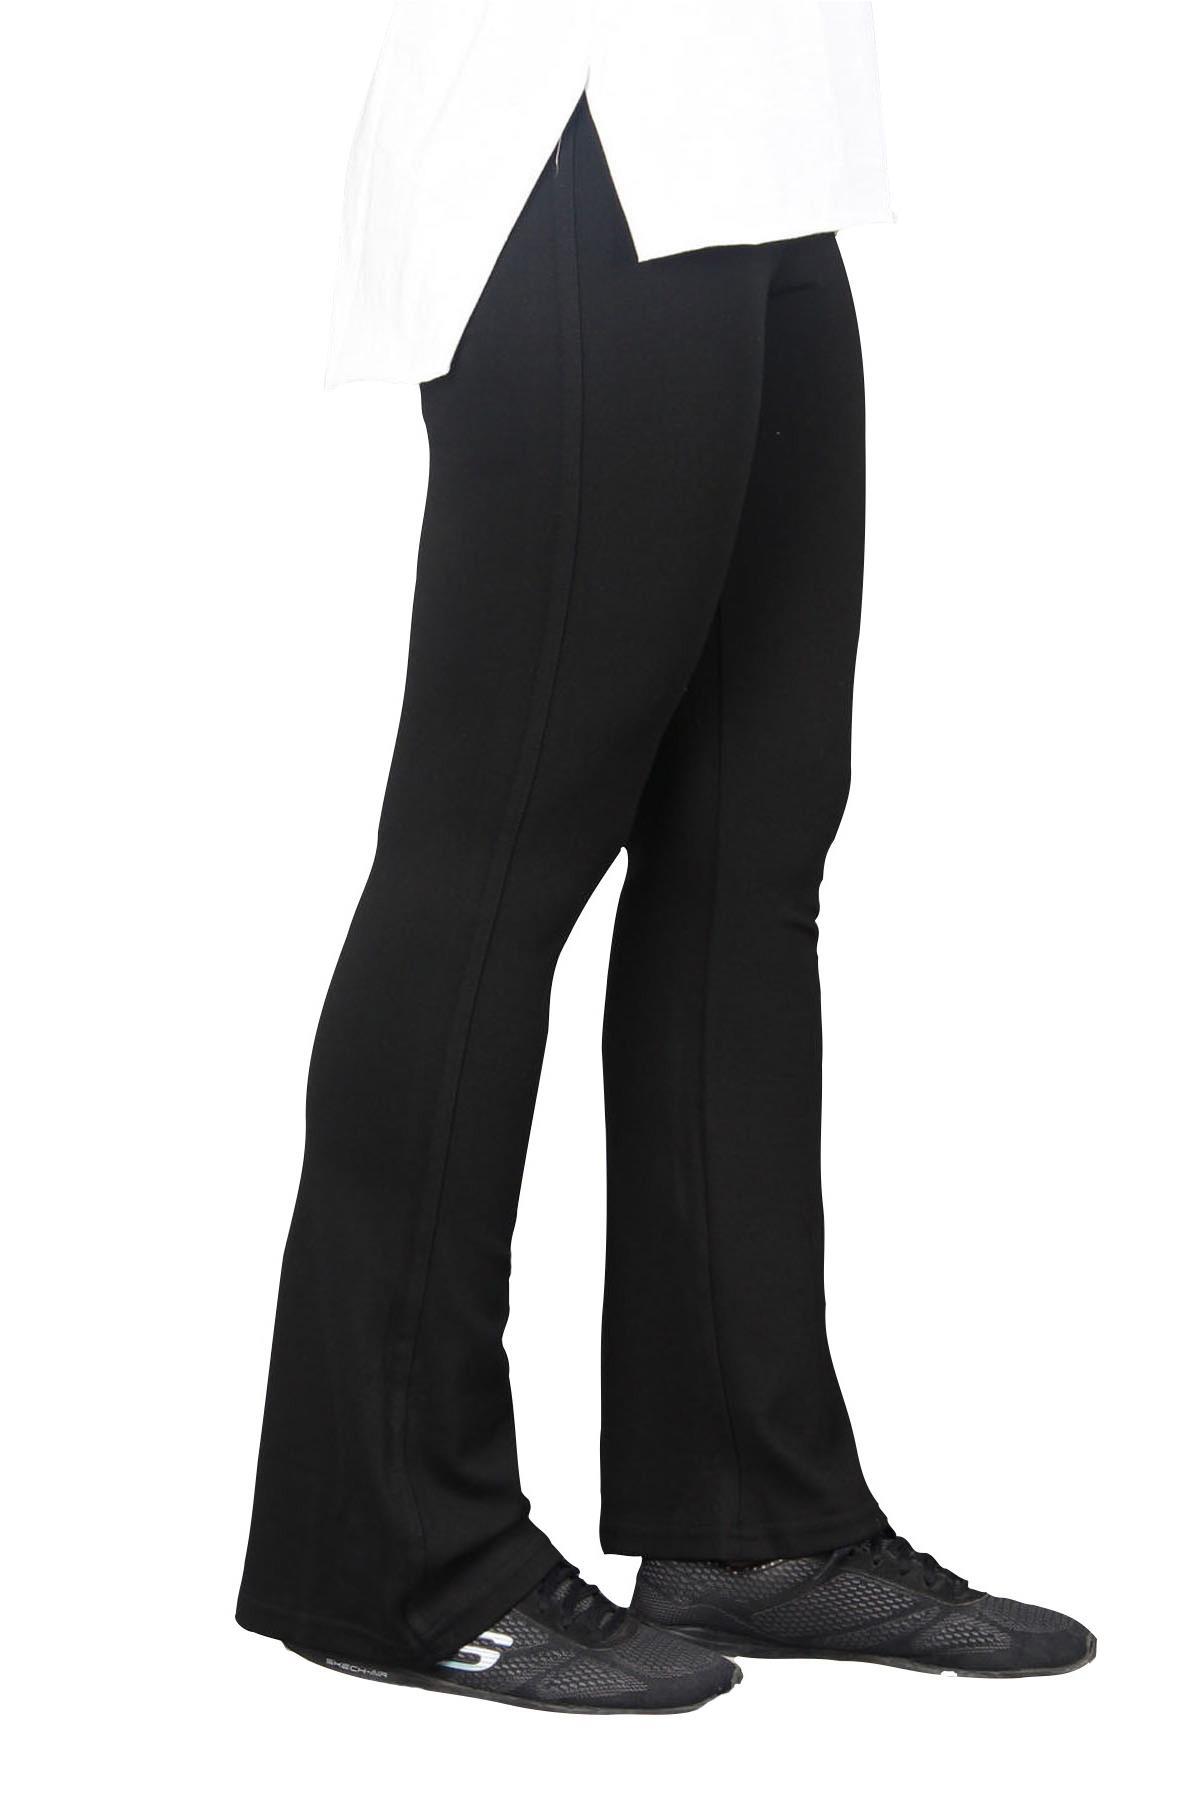 fierte-kadin-buyuk-beden-tayt-etkm001-yuksek-elastik-bel-ispanyol-paca-pantolon-spor-siyah-27519.jpg